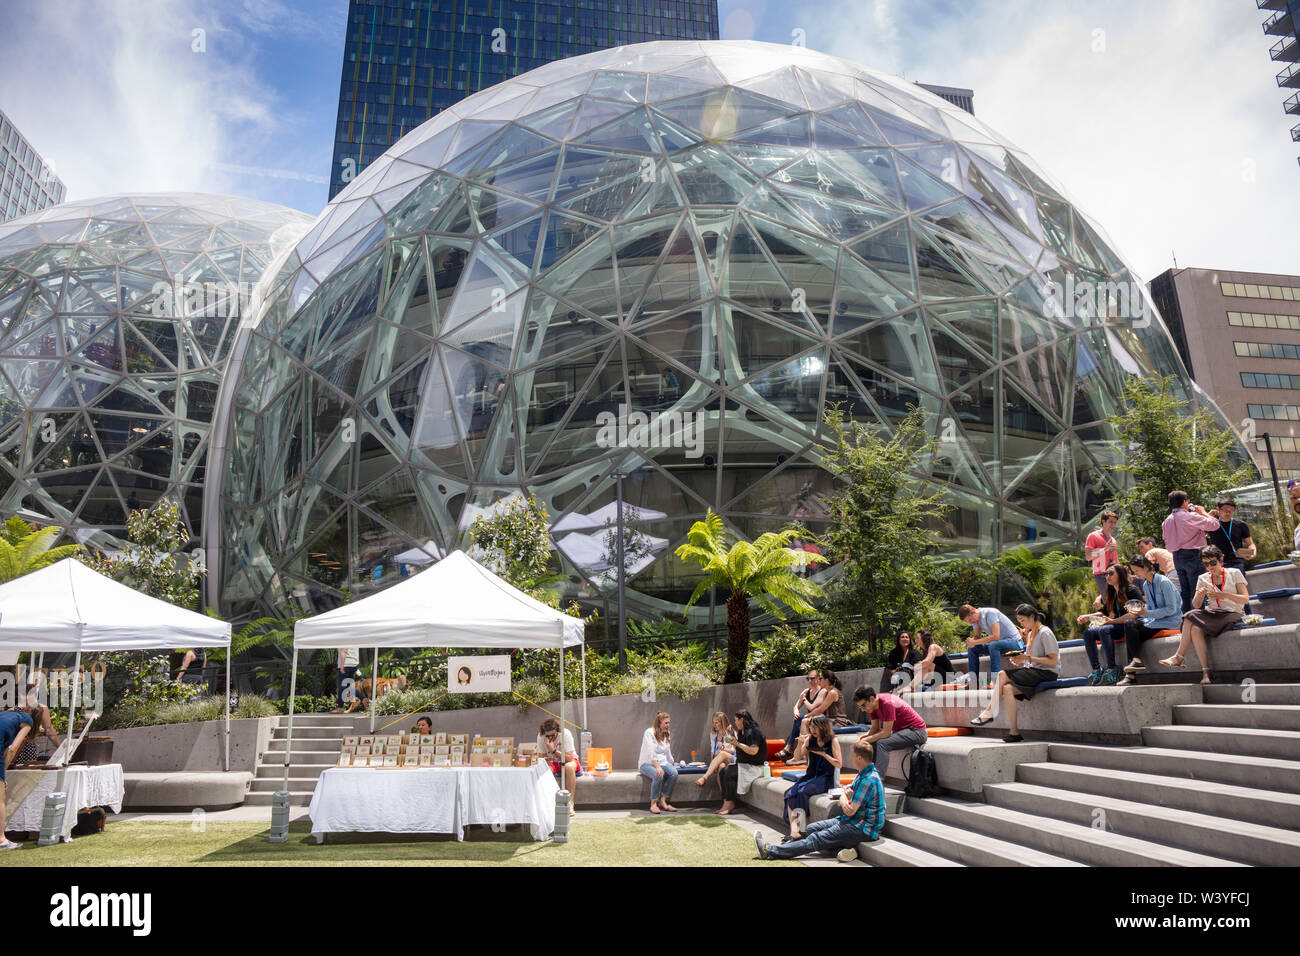 Amazon Mitarbeiter außerhalb der Amazon Sphären, Amazon headquarters Campus, Seattle, Washington, Vereinigte Staaten von Amerika Stockfoto